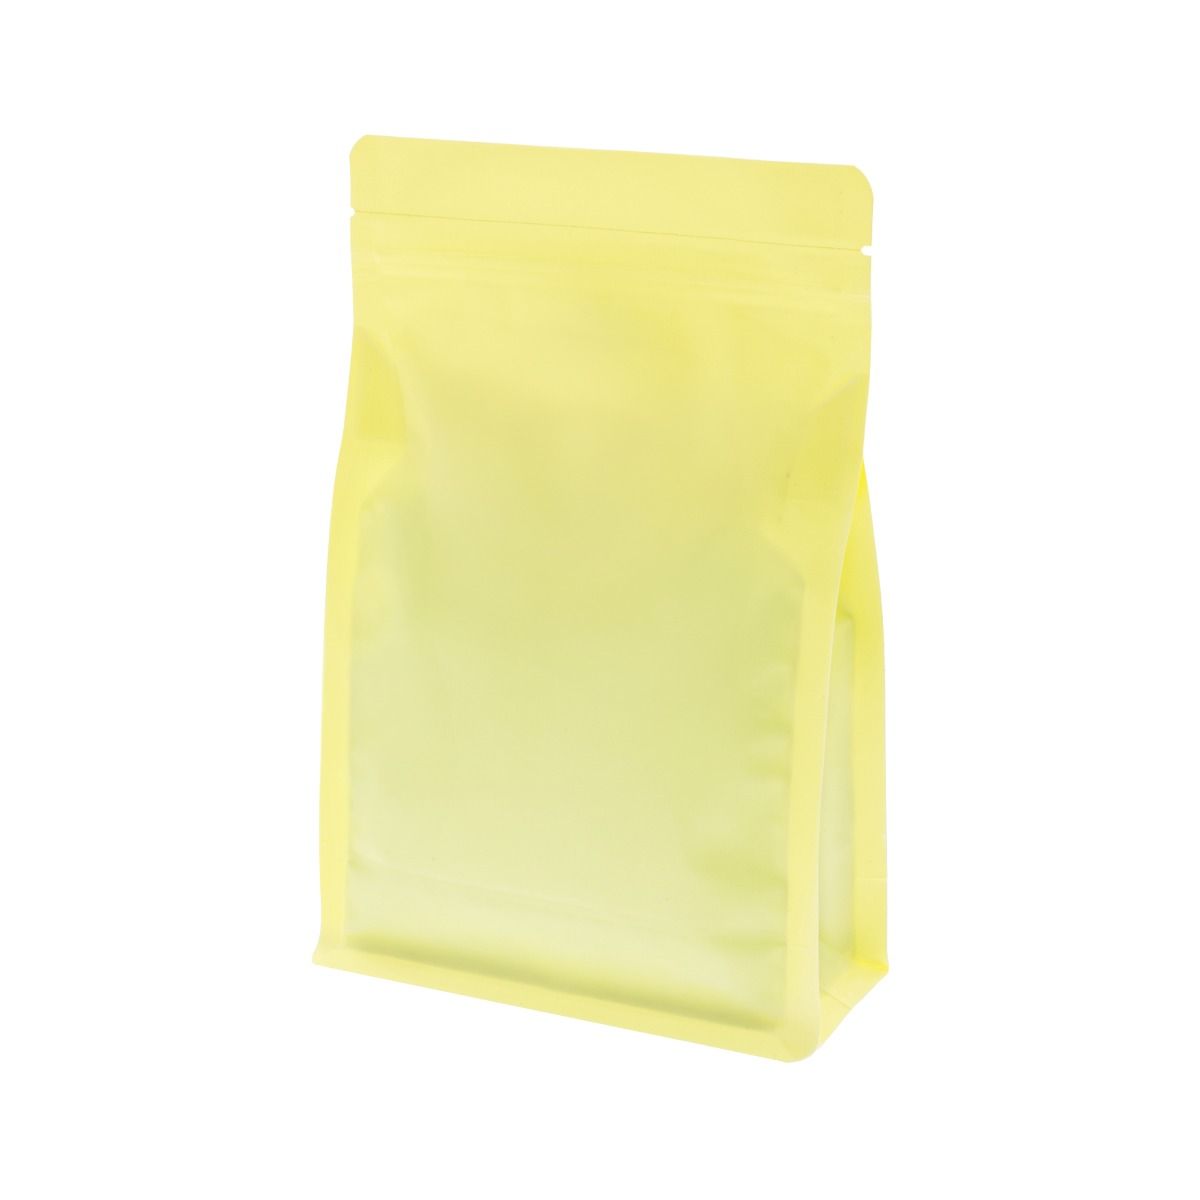 Flachbodenbeutel mit Zip-verschluss - matt gelb (100% recycelbar)